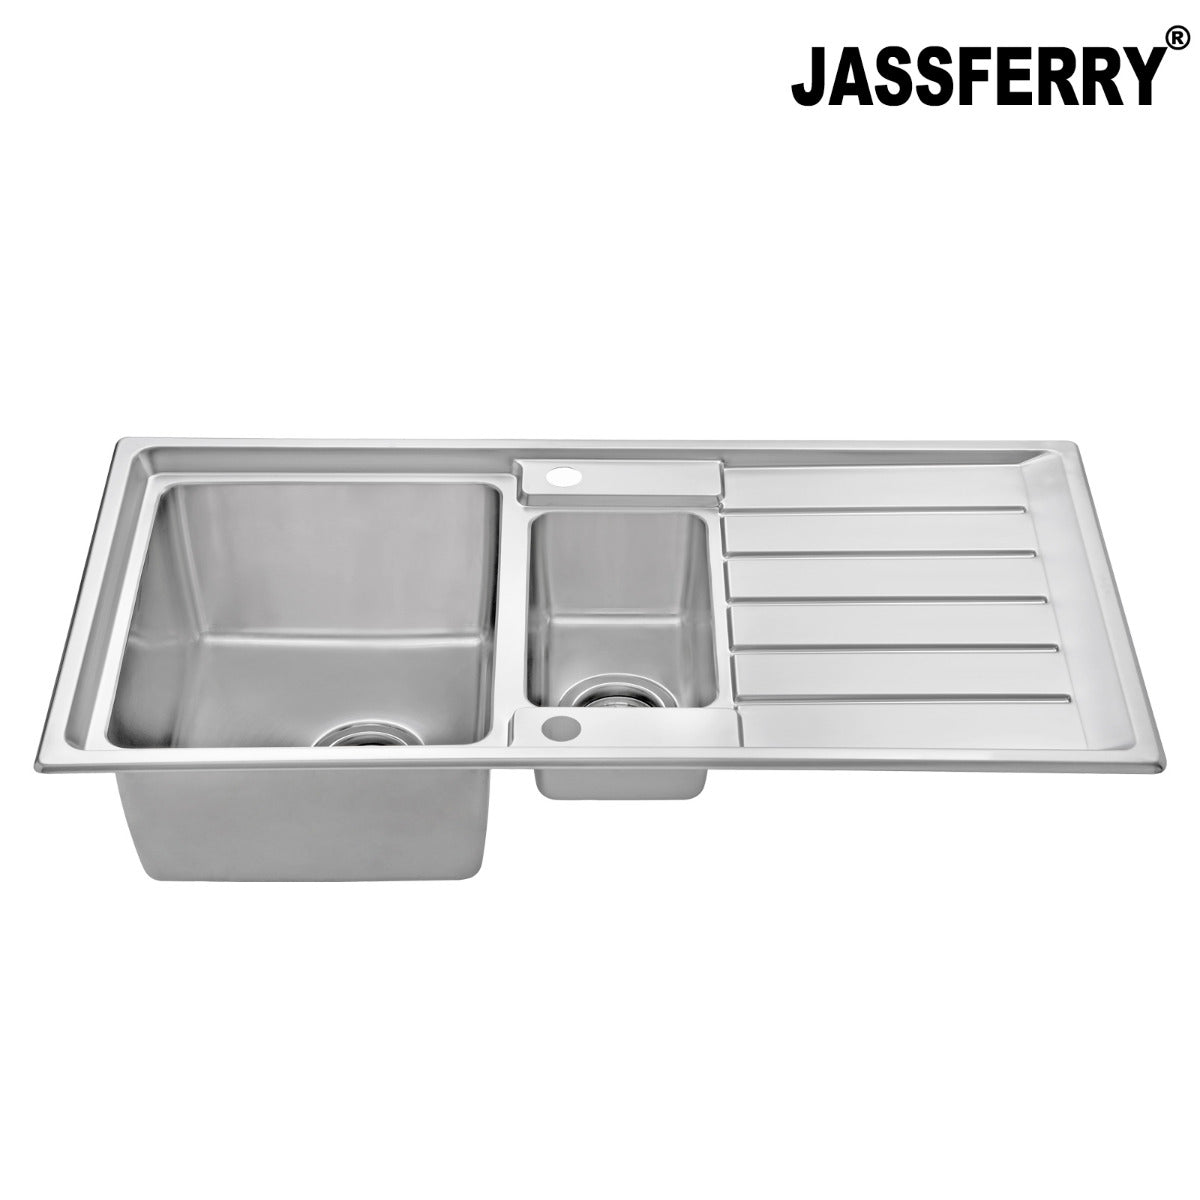 JassferryJASSFERRY Welding Stainless Steel Kitchen Sink 1.5 One Half Bowl Reversible DrainerKitchen Sinks